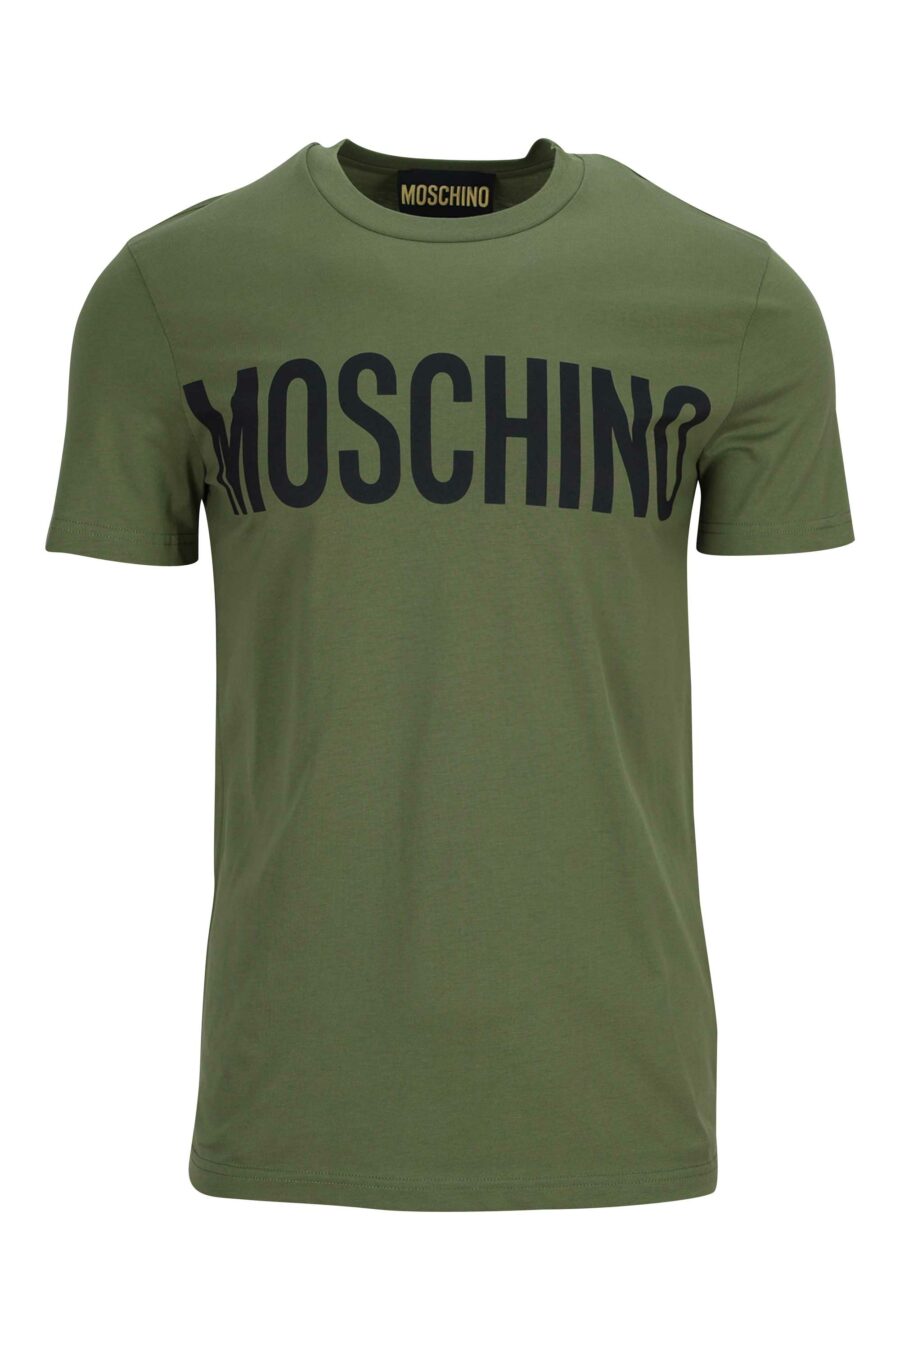 T-shirt verde militar de algodão orgânico com maxilogue preto - 889316649246